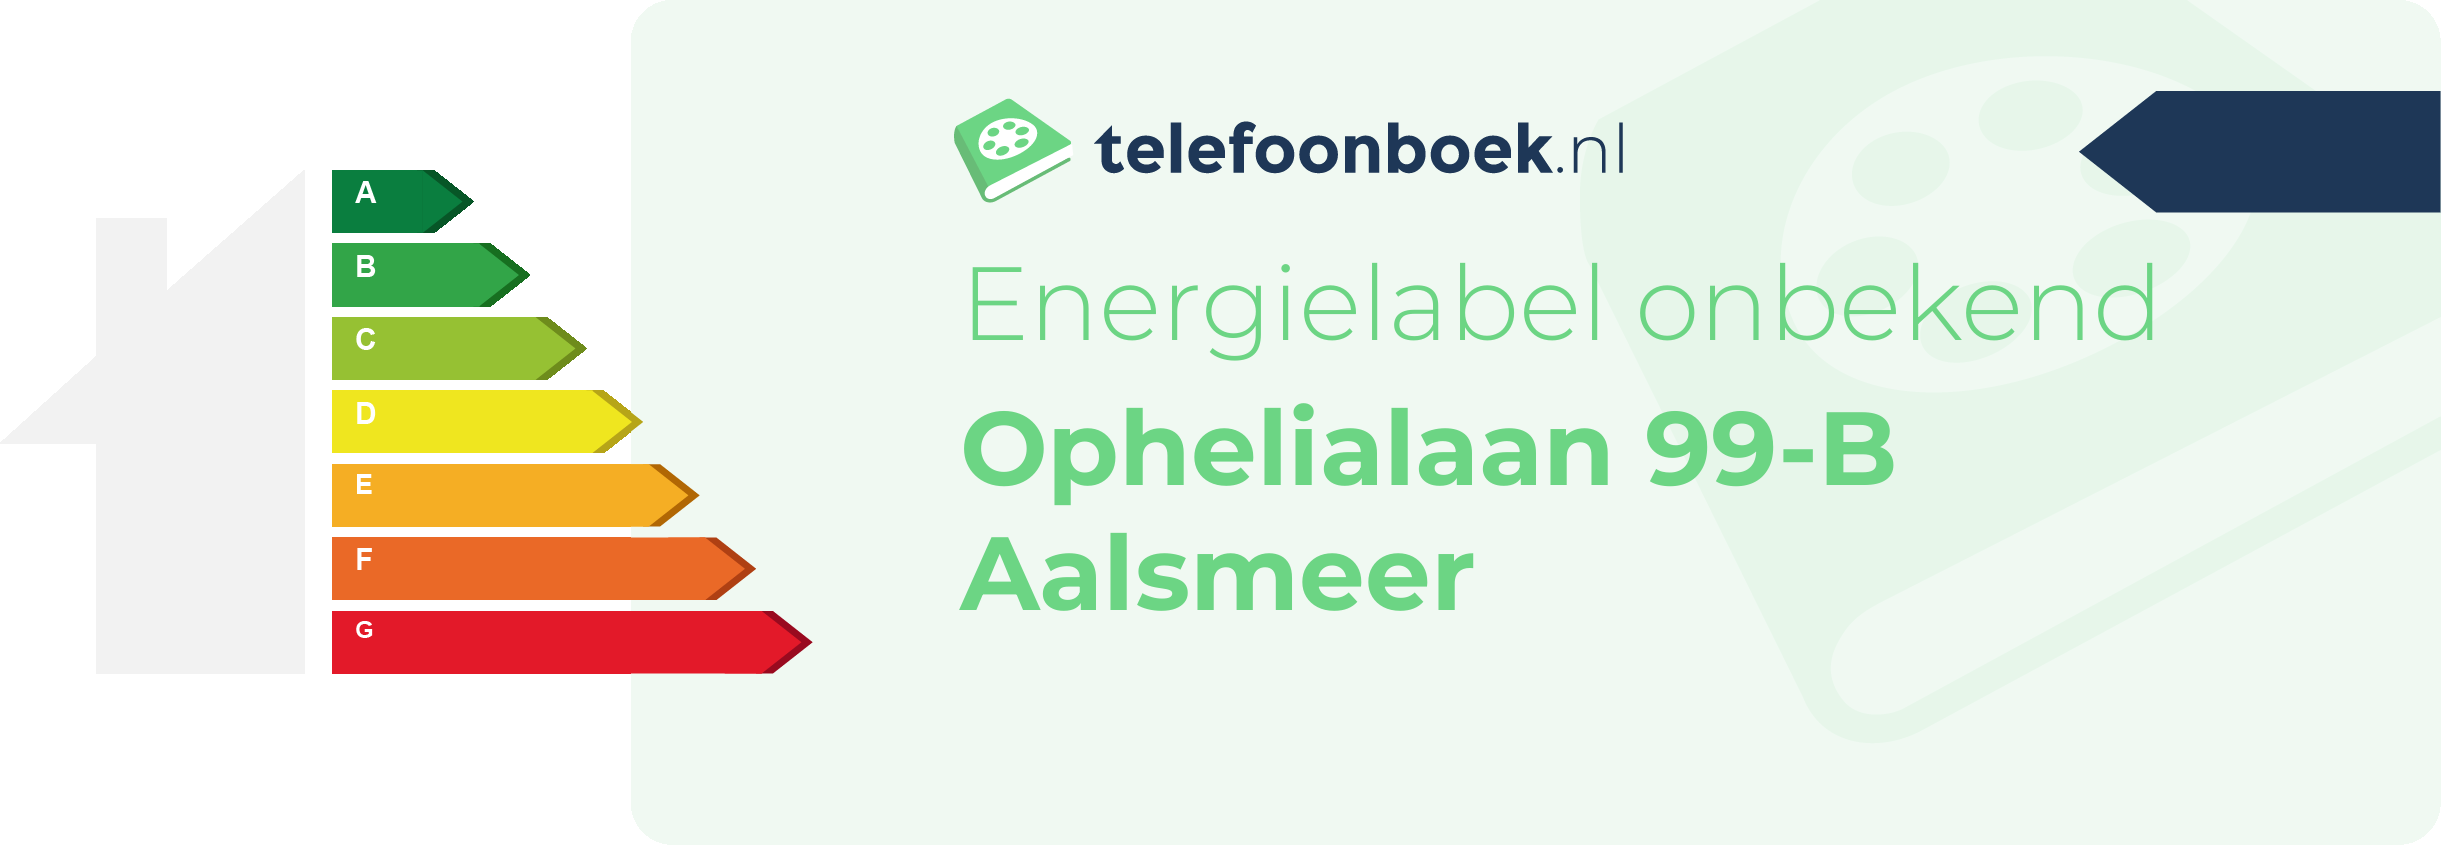 Energielabel Ophelialaan 99-B Aalsmeer